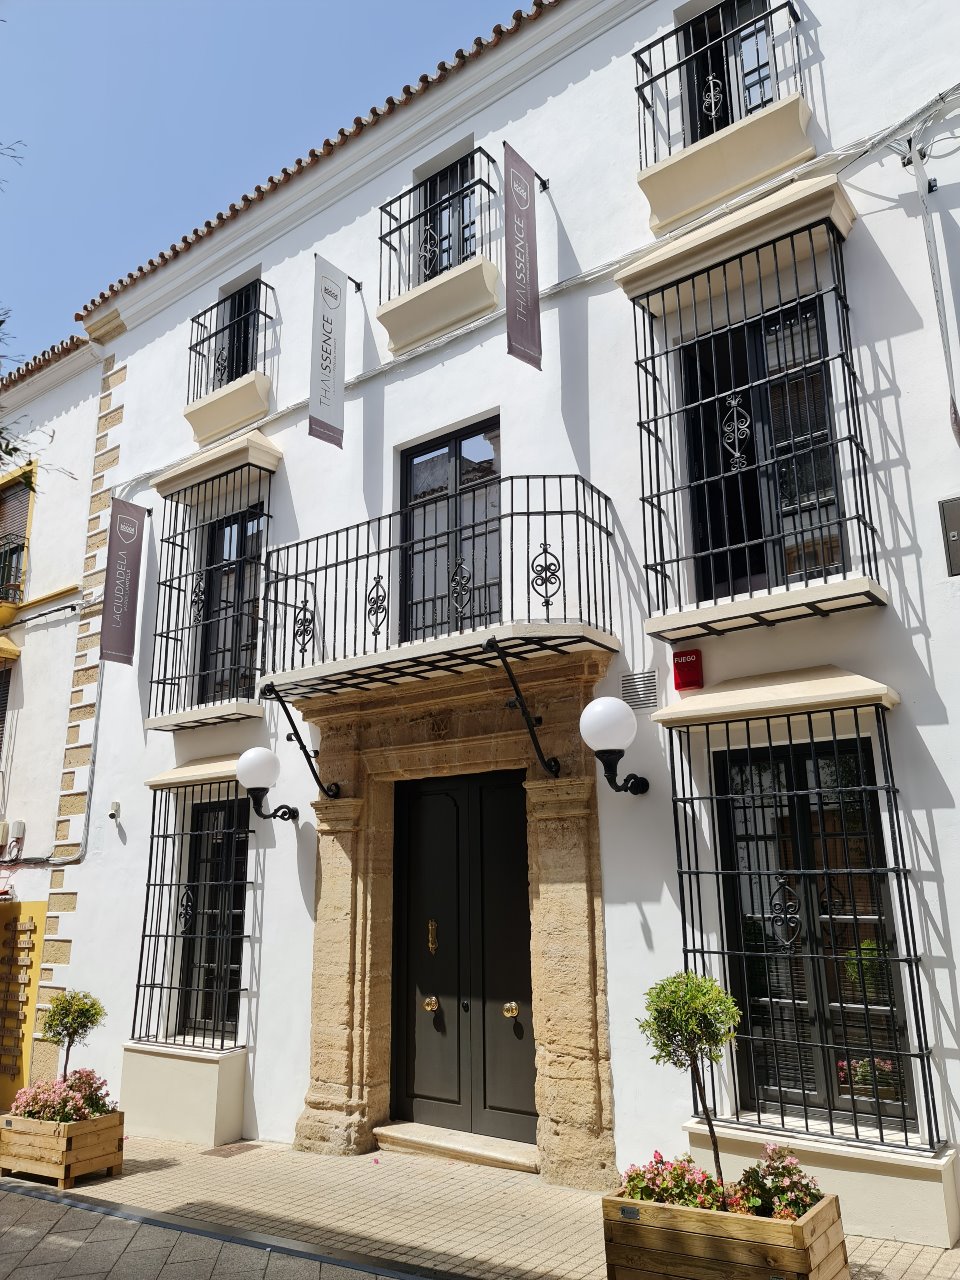 Maison Ardois está ubicado en un lugar privilegiado: la Calle Ancha de la ciudad malagueña. 